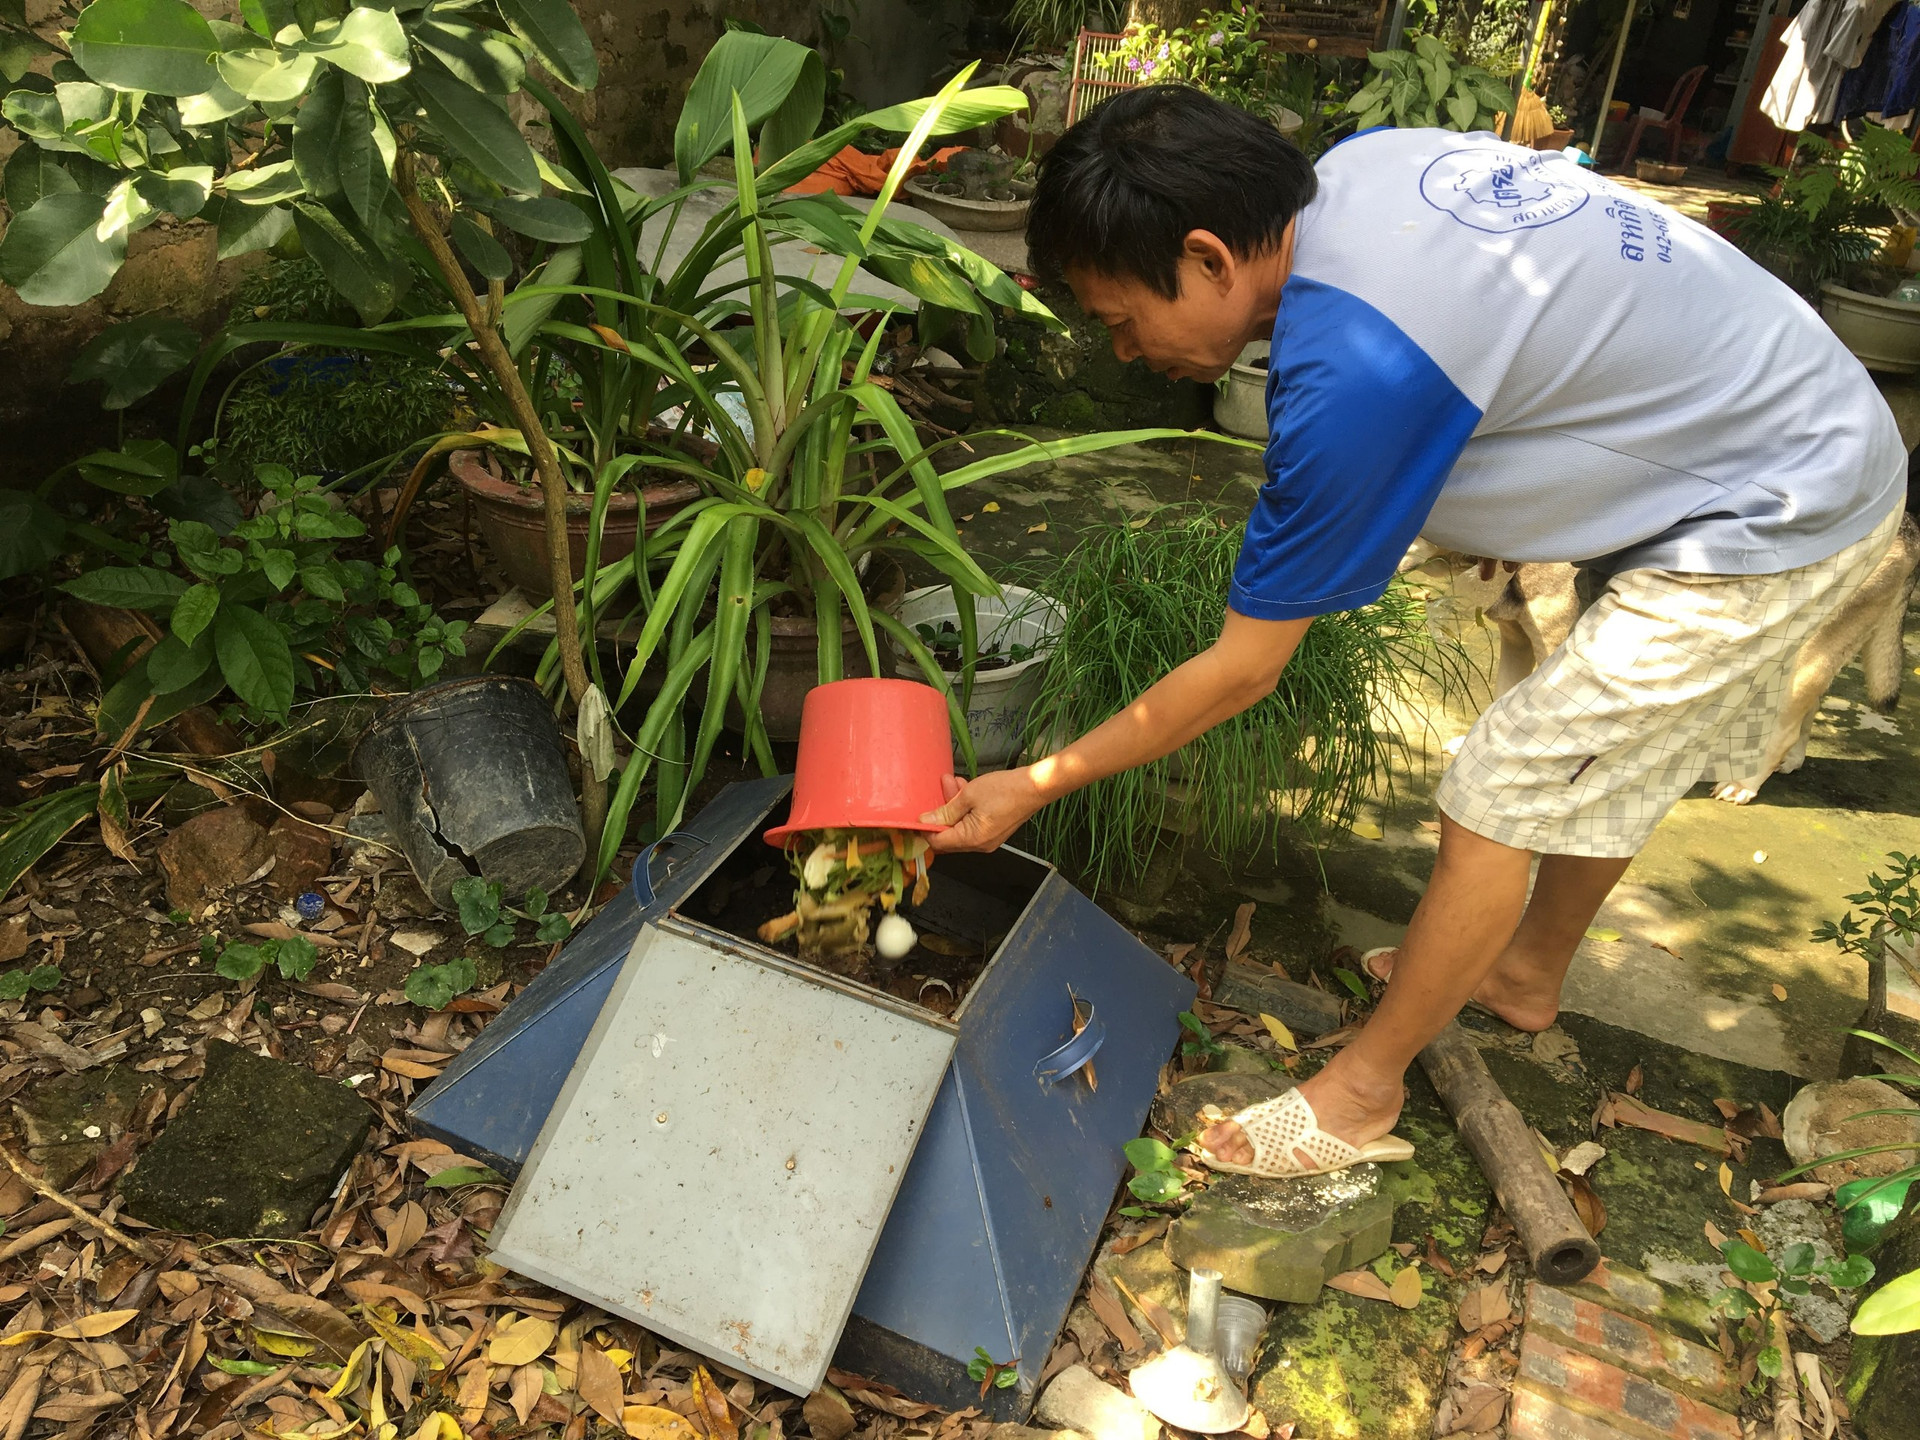 Thanh Hóa: Tập huấn xử lý rác thải hữu cơ cho hội viên nông dân